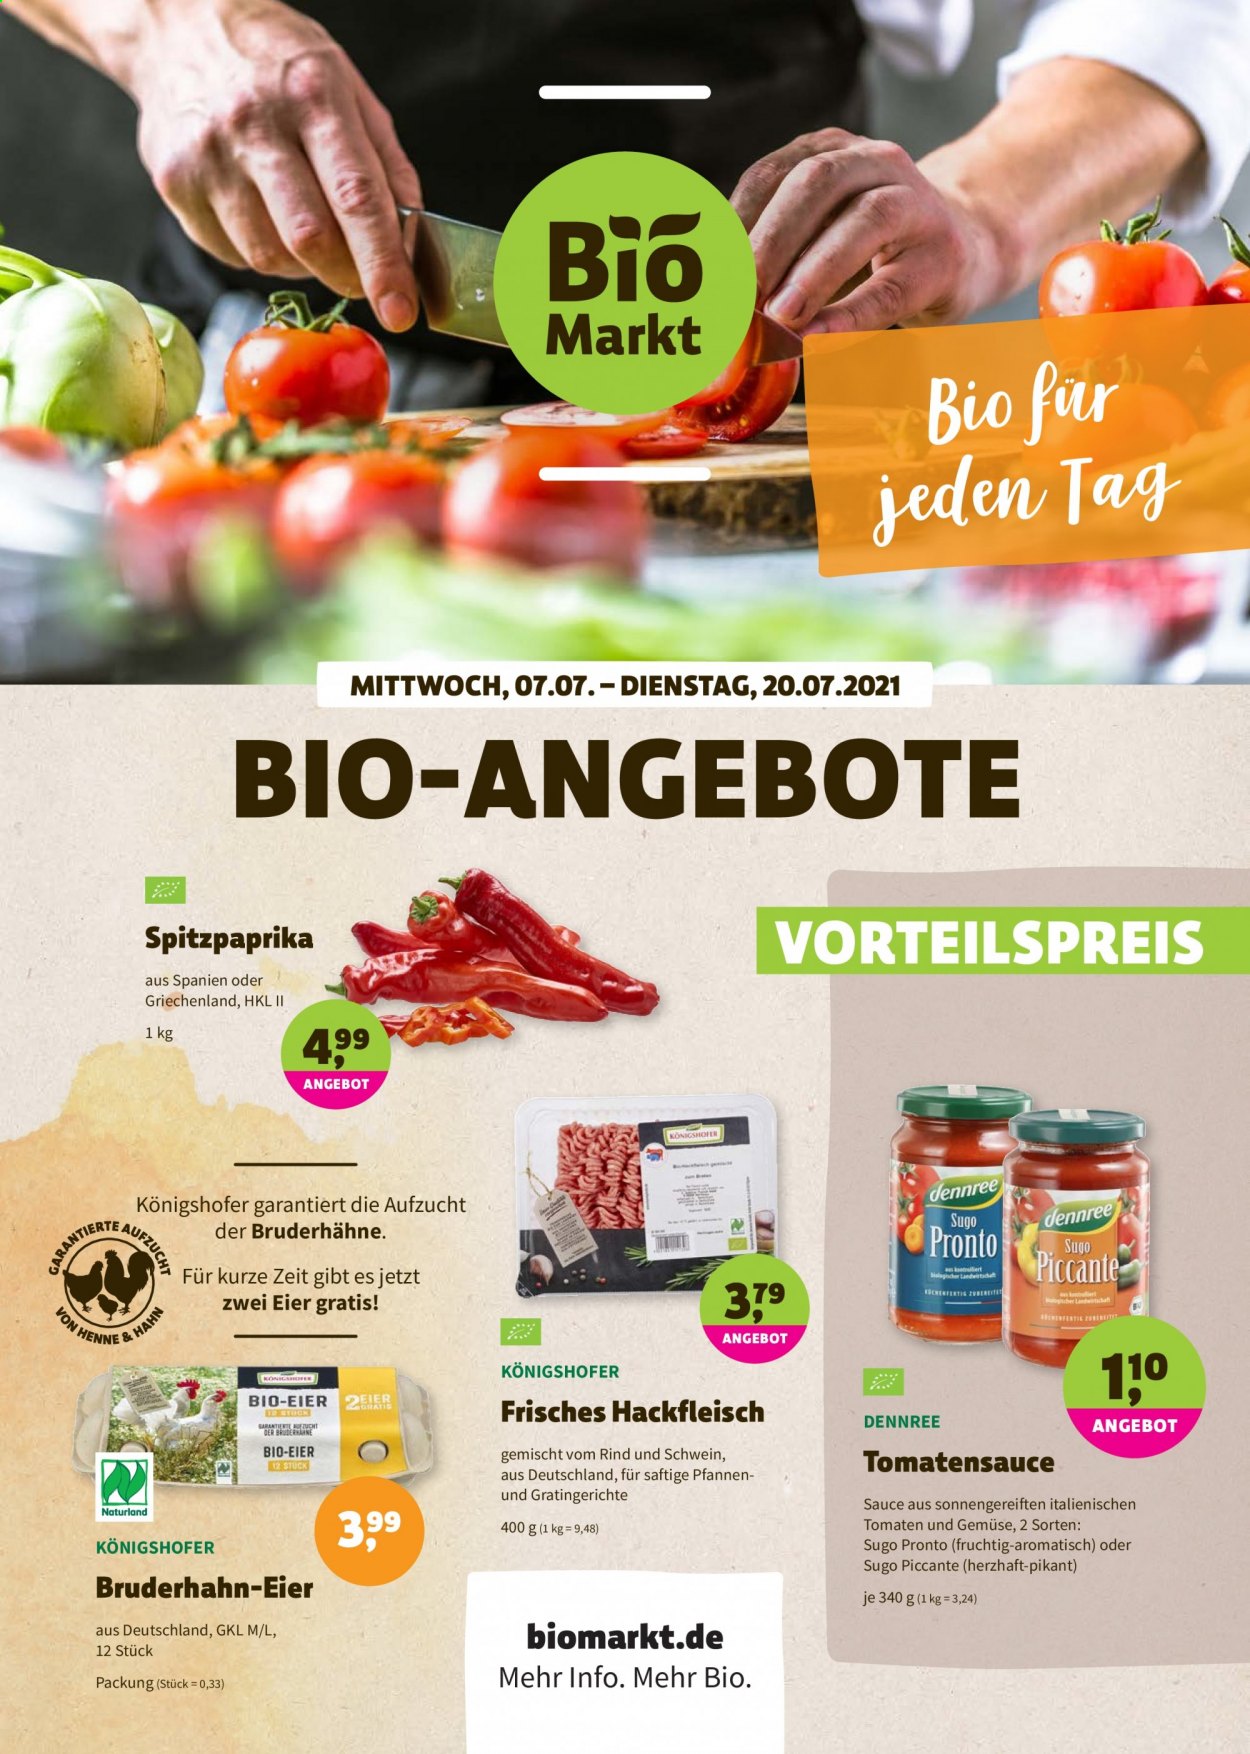 thumbnail - Prospekte BioMarkt - 7.07.2021 - 20.07.2021 - Produkte in Aktion - Paprika, Spitzpaprika, Hackfleisch, Schweinehackfleisch, Rindfleischburger, Eier, Tomatensauce, Sugo, Pfanne. Seite 1.